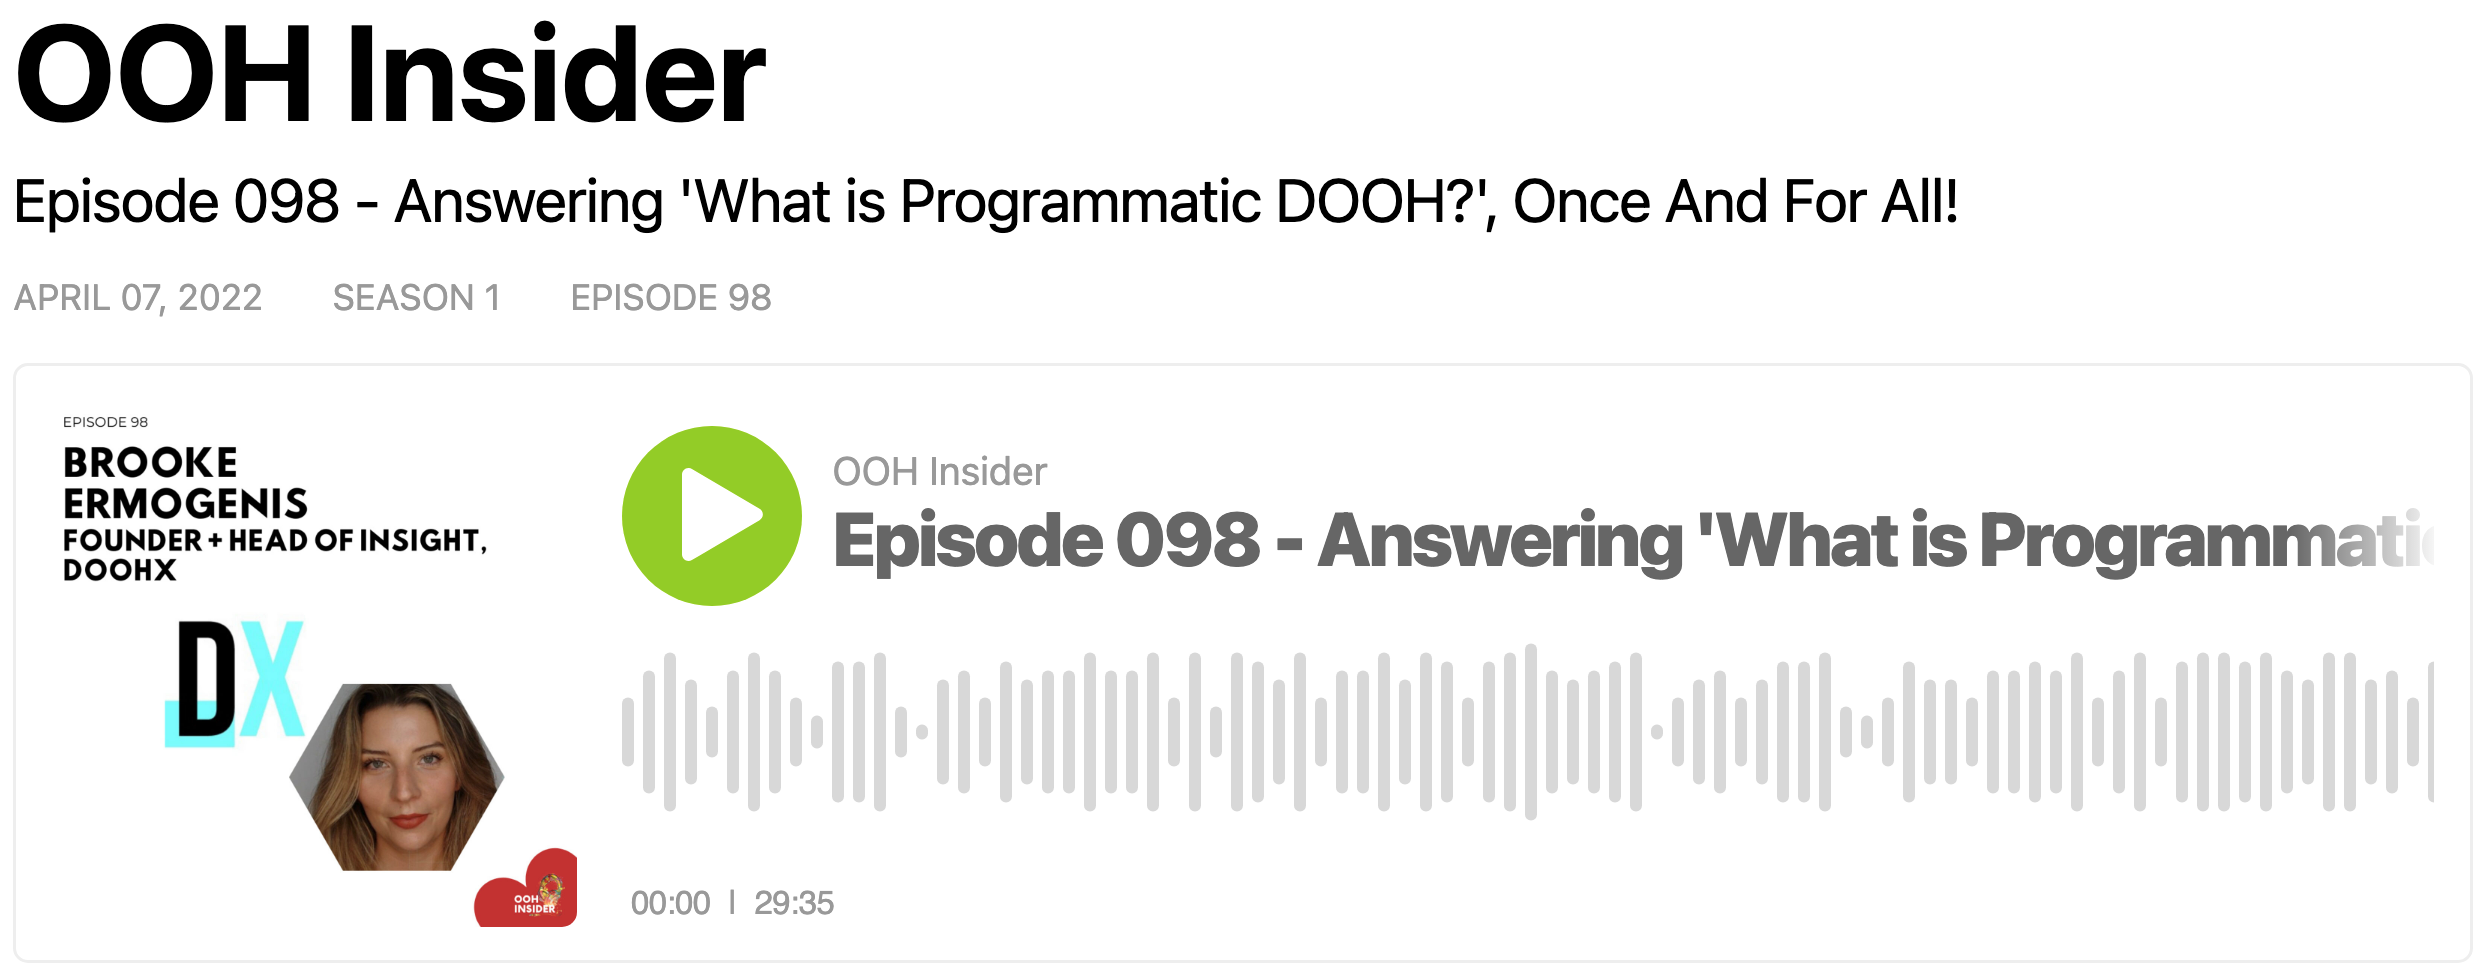 OOH Insider Podcast Episode 098